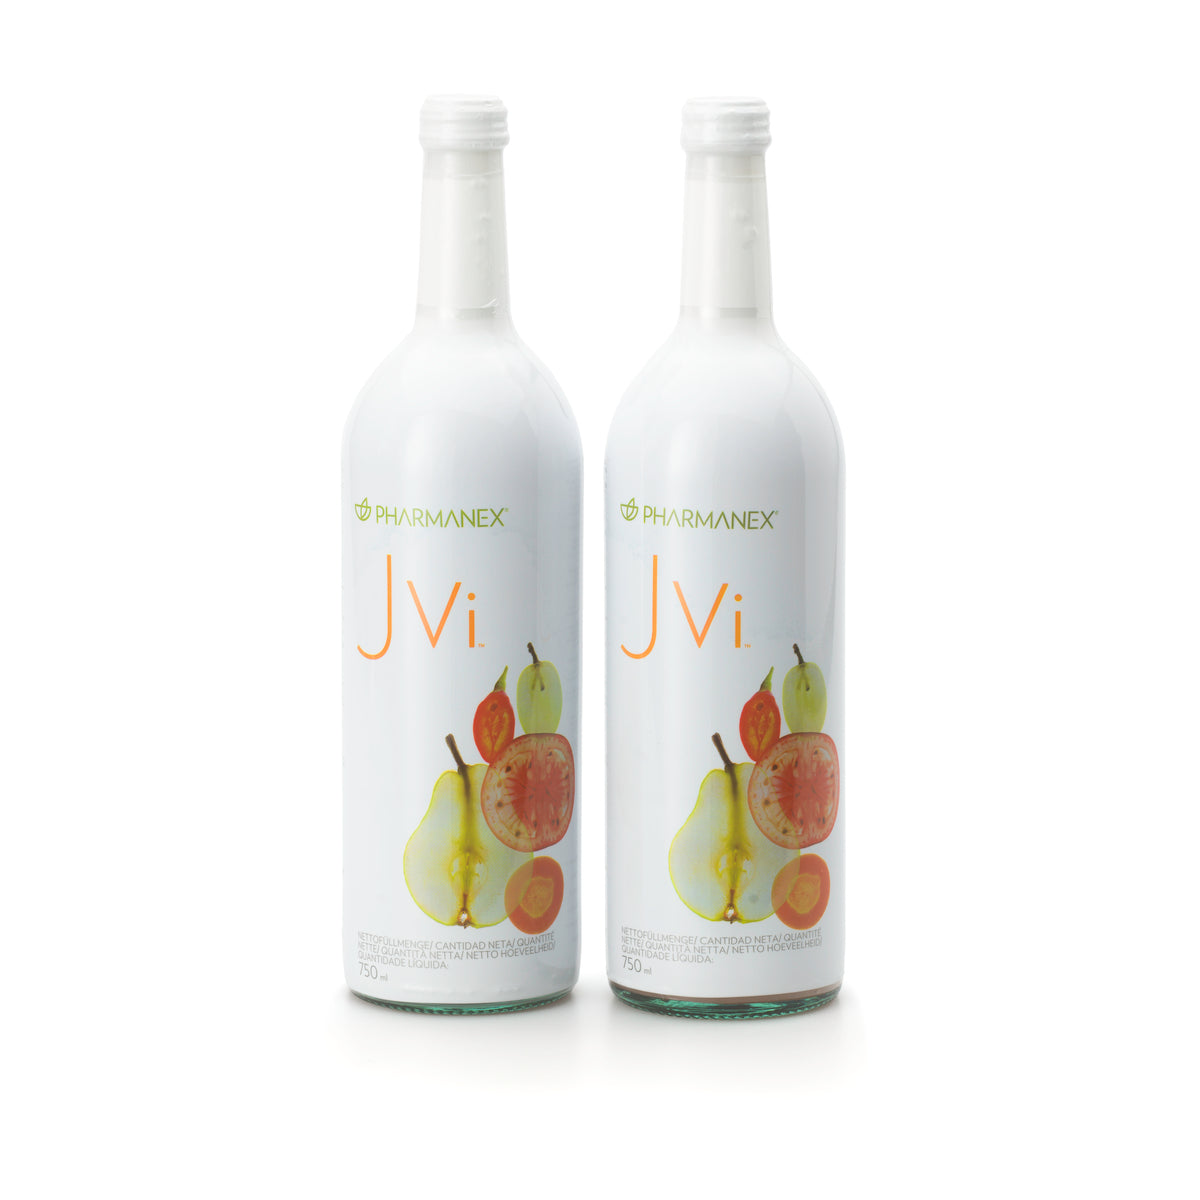 JVi - Vitamingetränk von Nu Skin